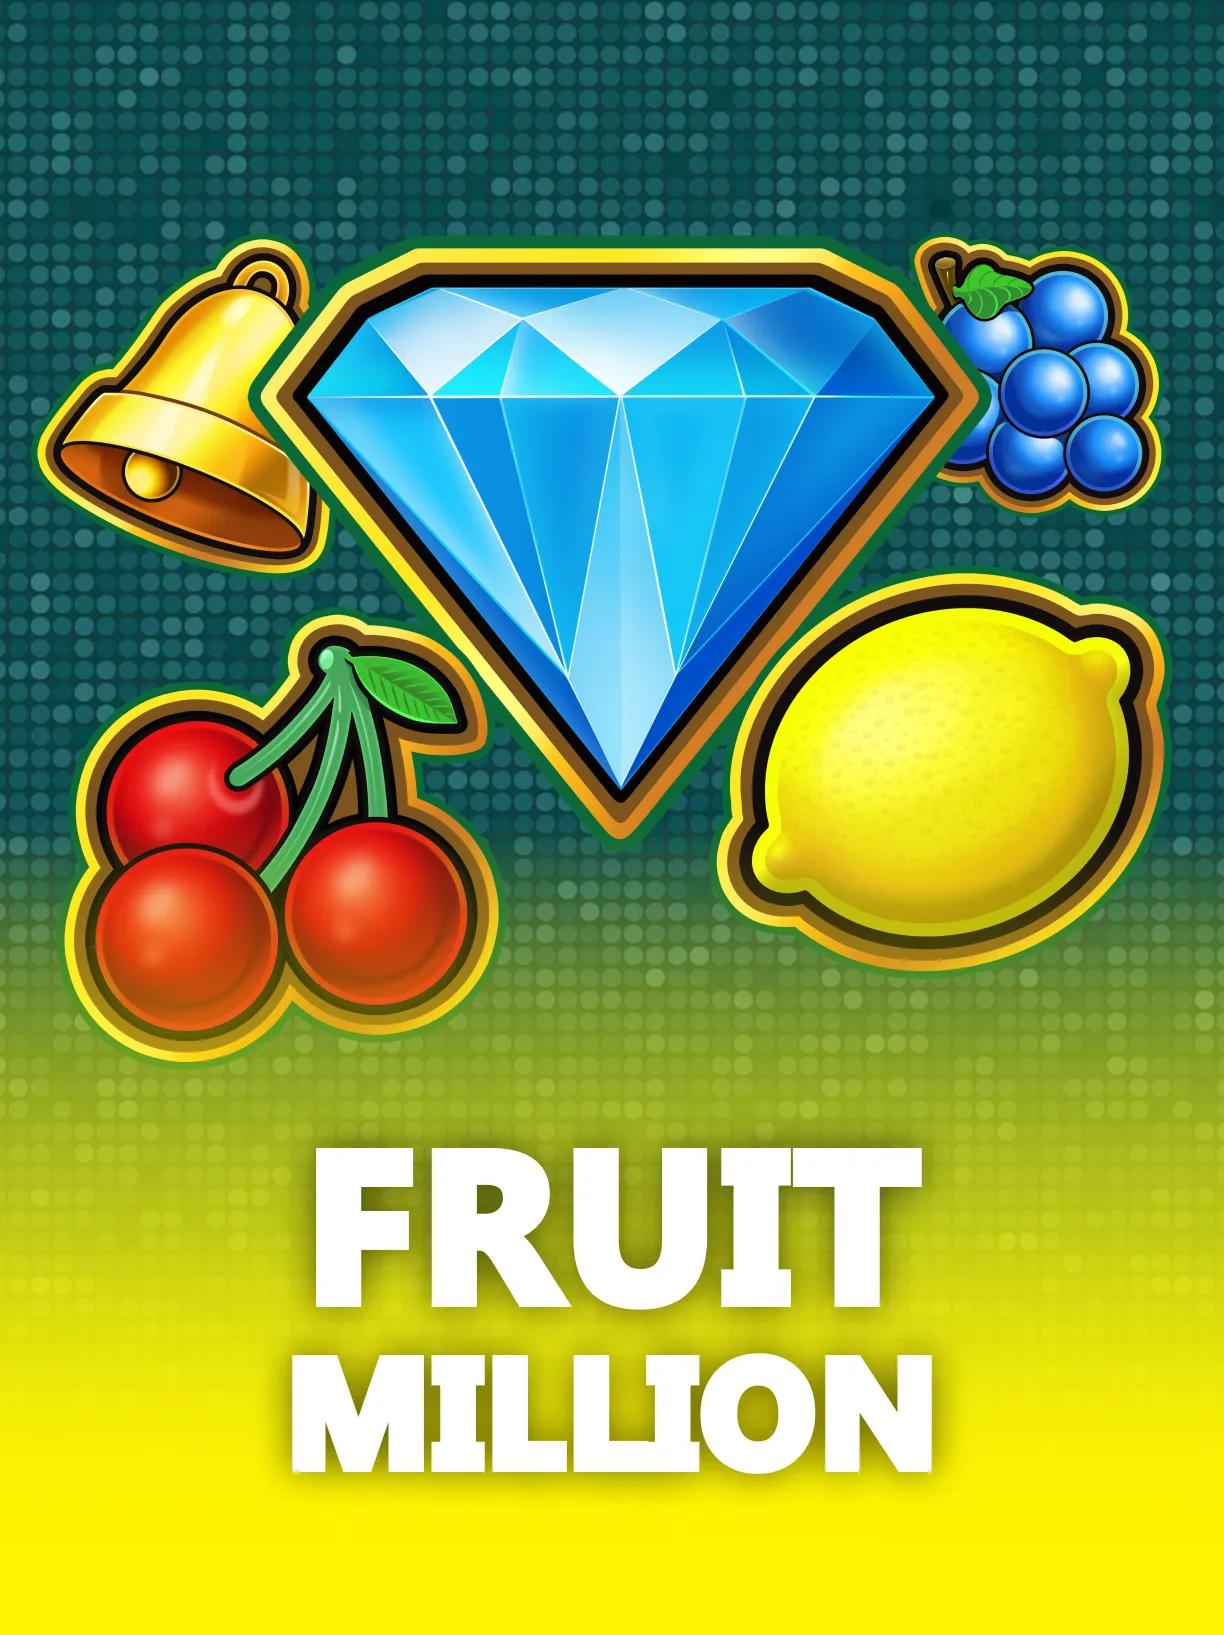 Fruit_Million_square.webp